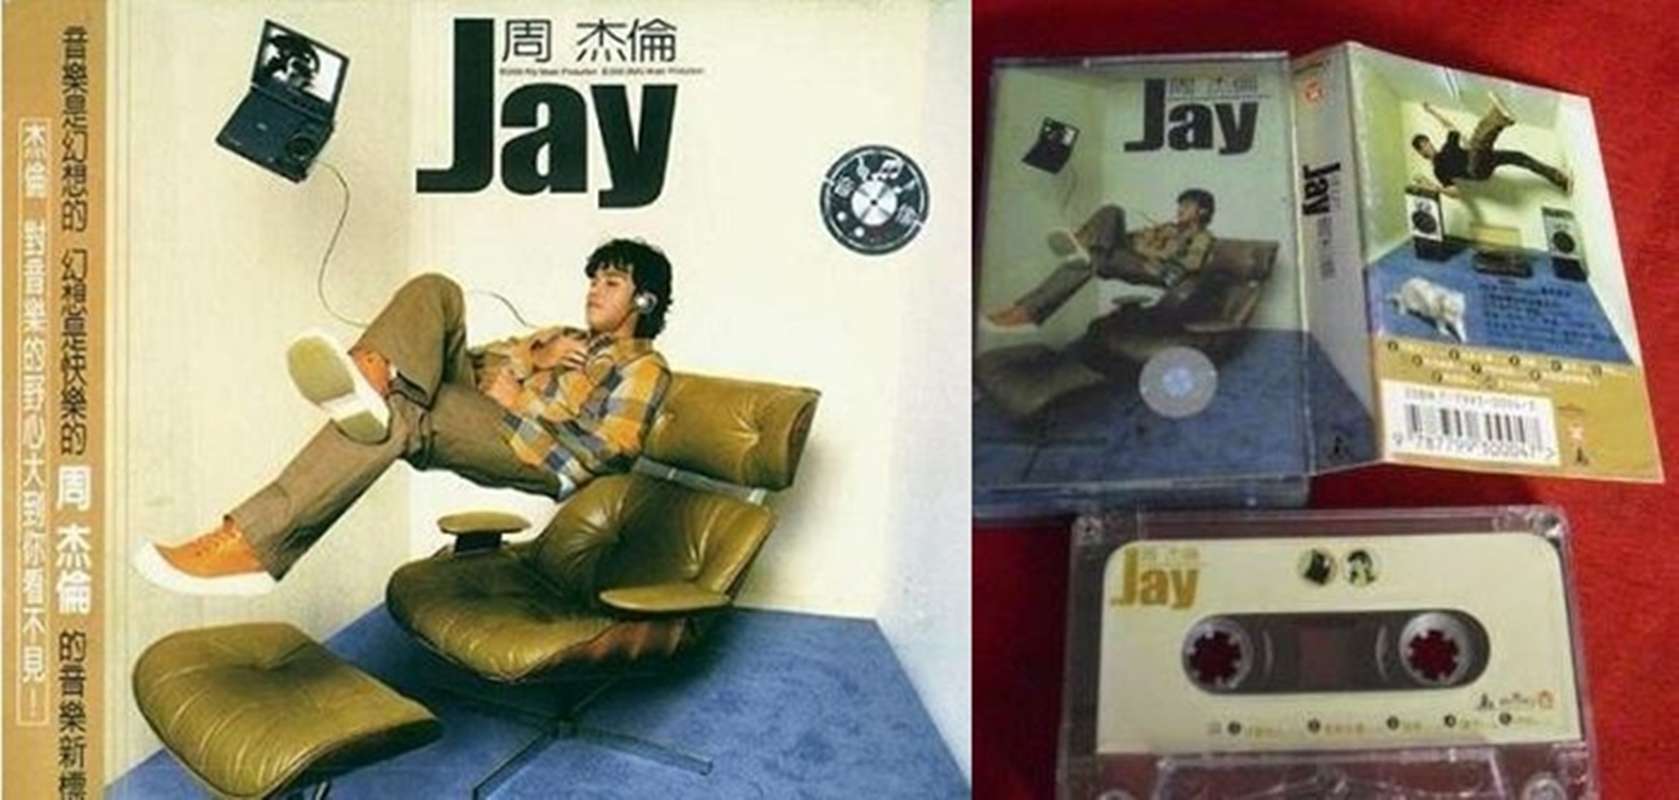 網路上討論「周杰倫最好作品」是第一張『Jay』，和第二張『范特西』。